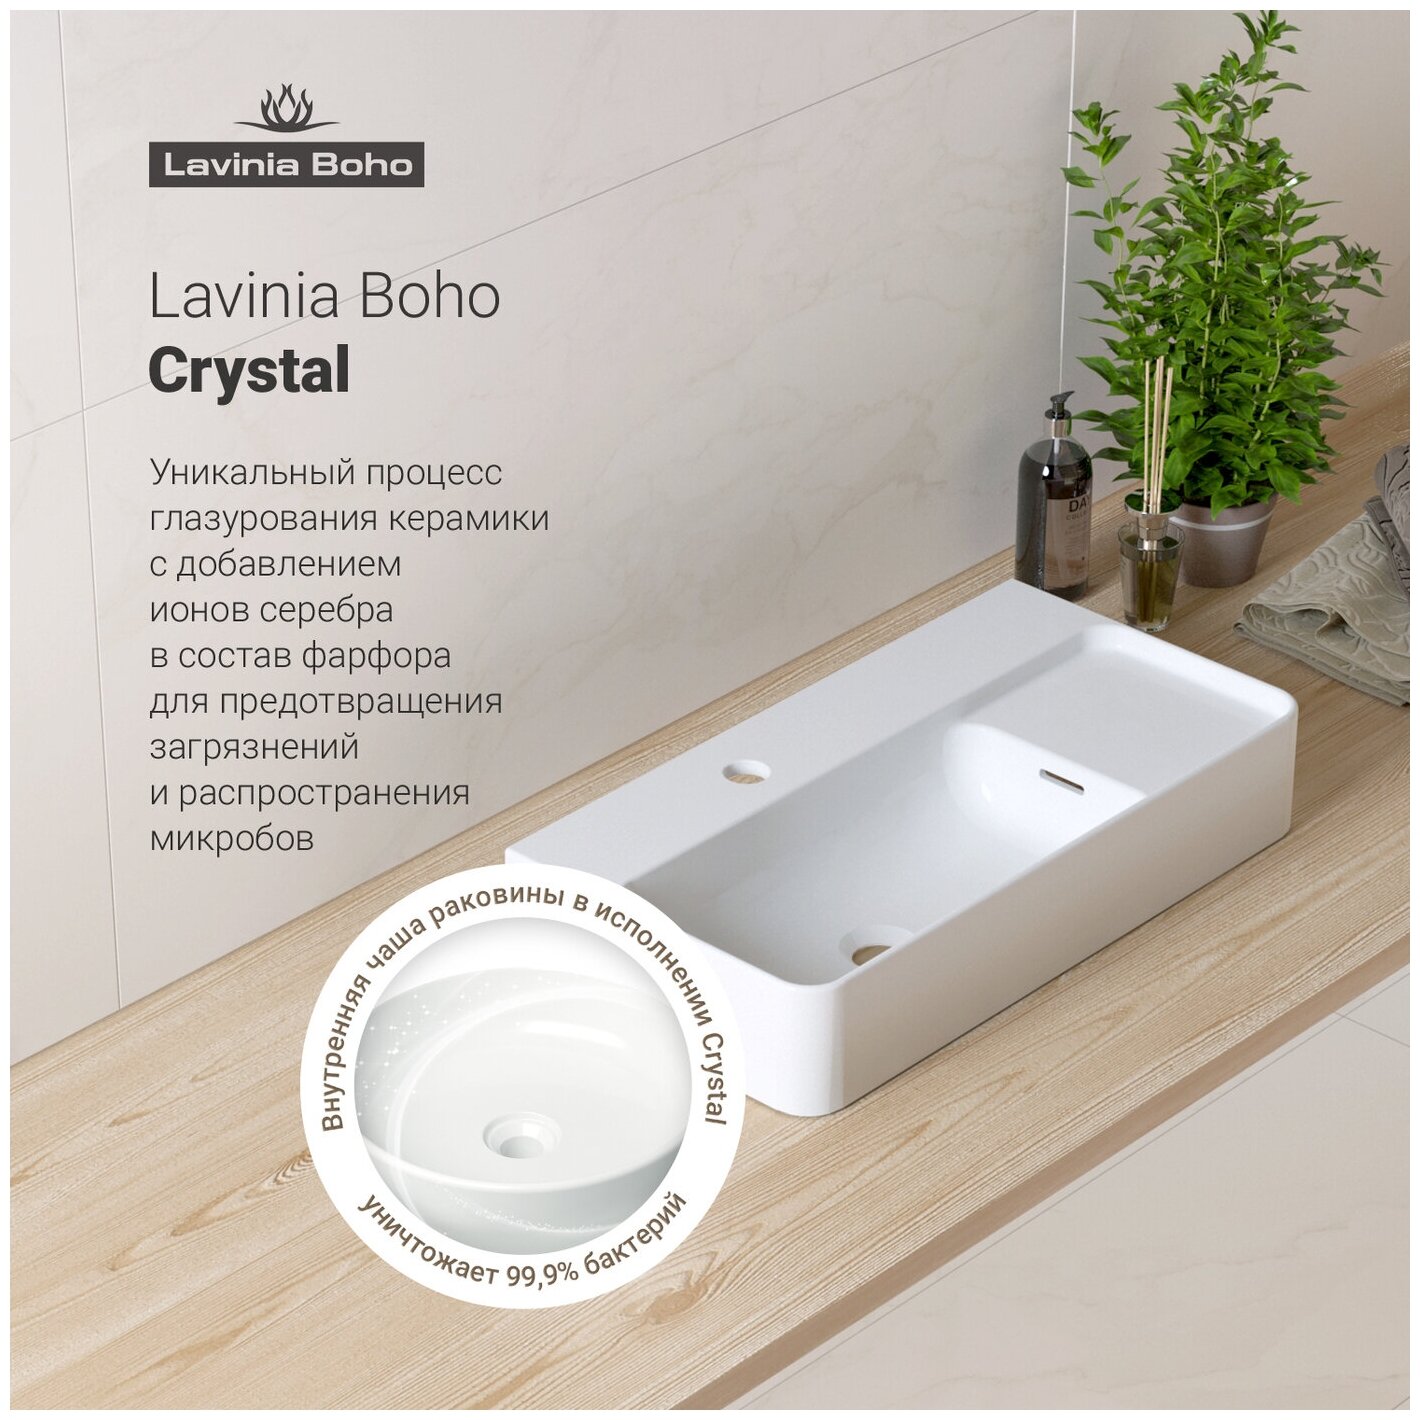 Комплект 2 в 1 Lavinia Boho Bathroom Sink 21520886: накладная фарфоровая раковина 60 см, донный клапан - фотография № 4